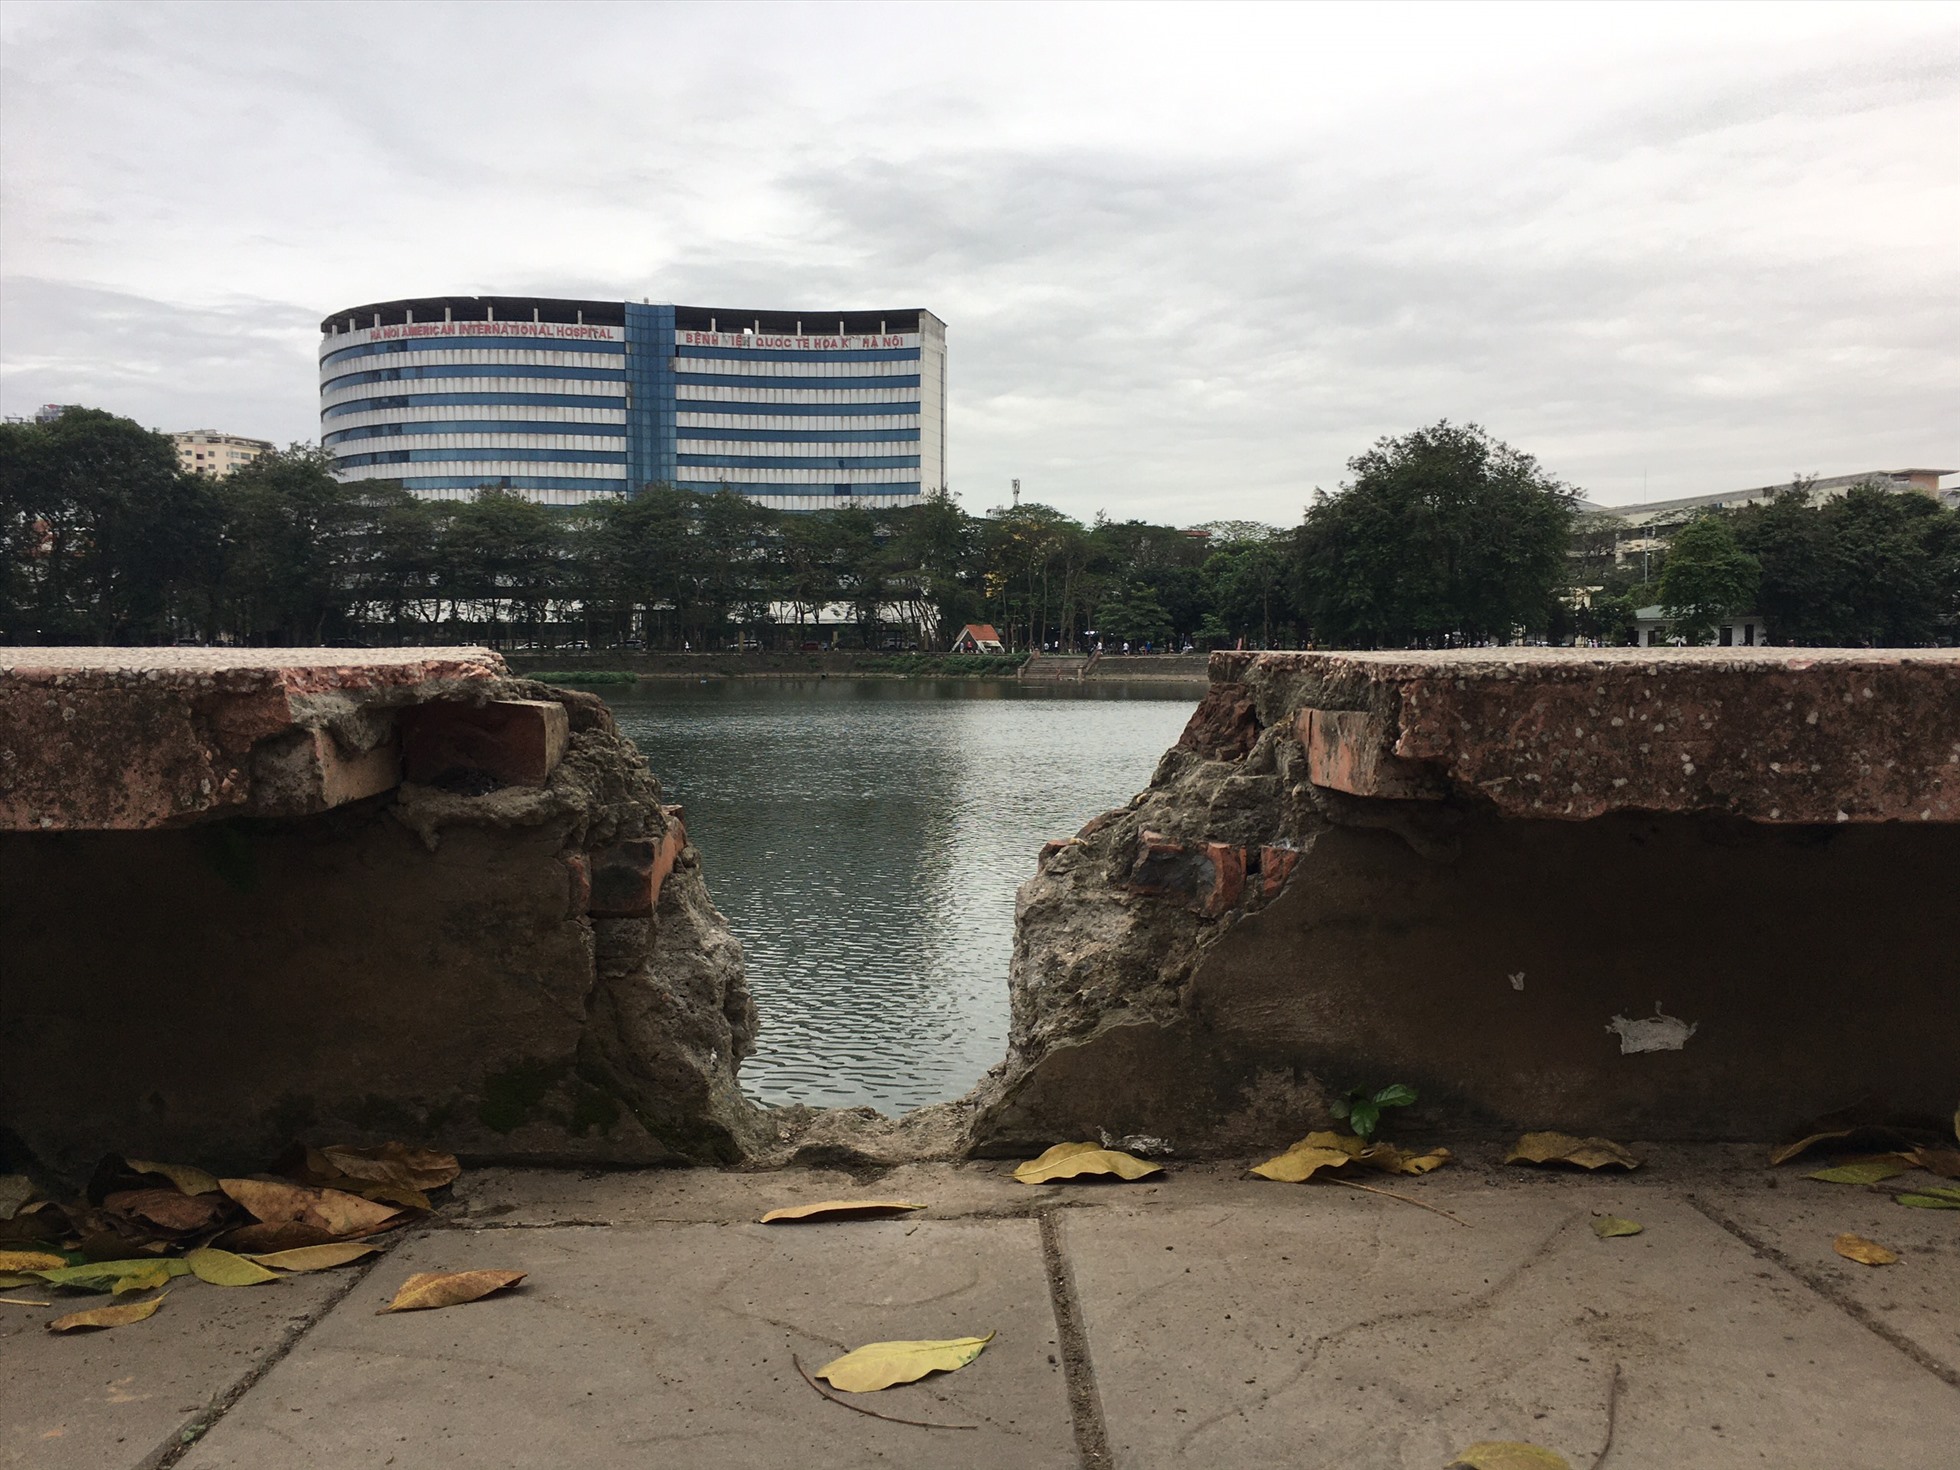 Nhiều vị trí mặt nền gạch của công viên Ngĩa Đô bị sụt lún , đá lát vỡ nứt hàng loạt, tường ven hồ cũng bị đục thủng.